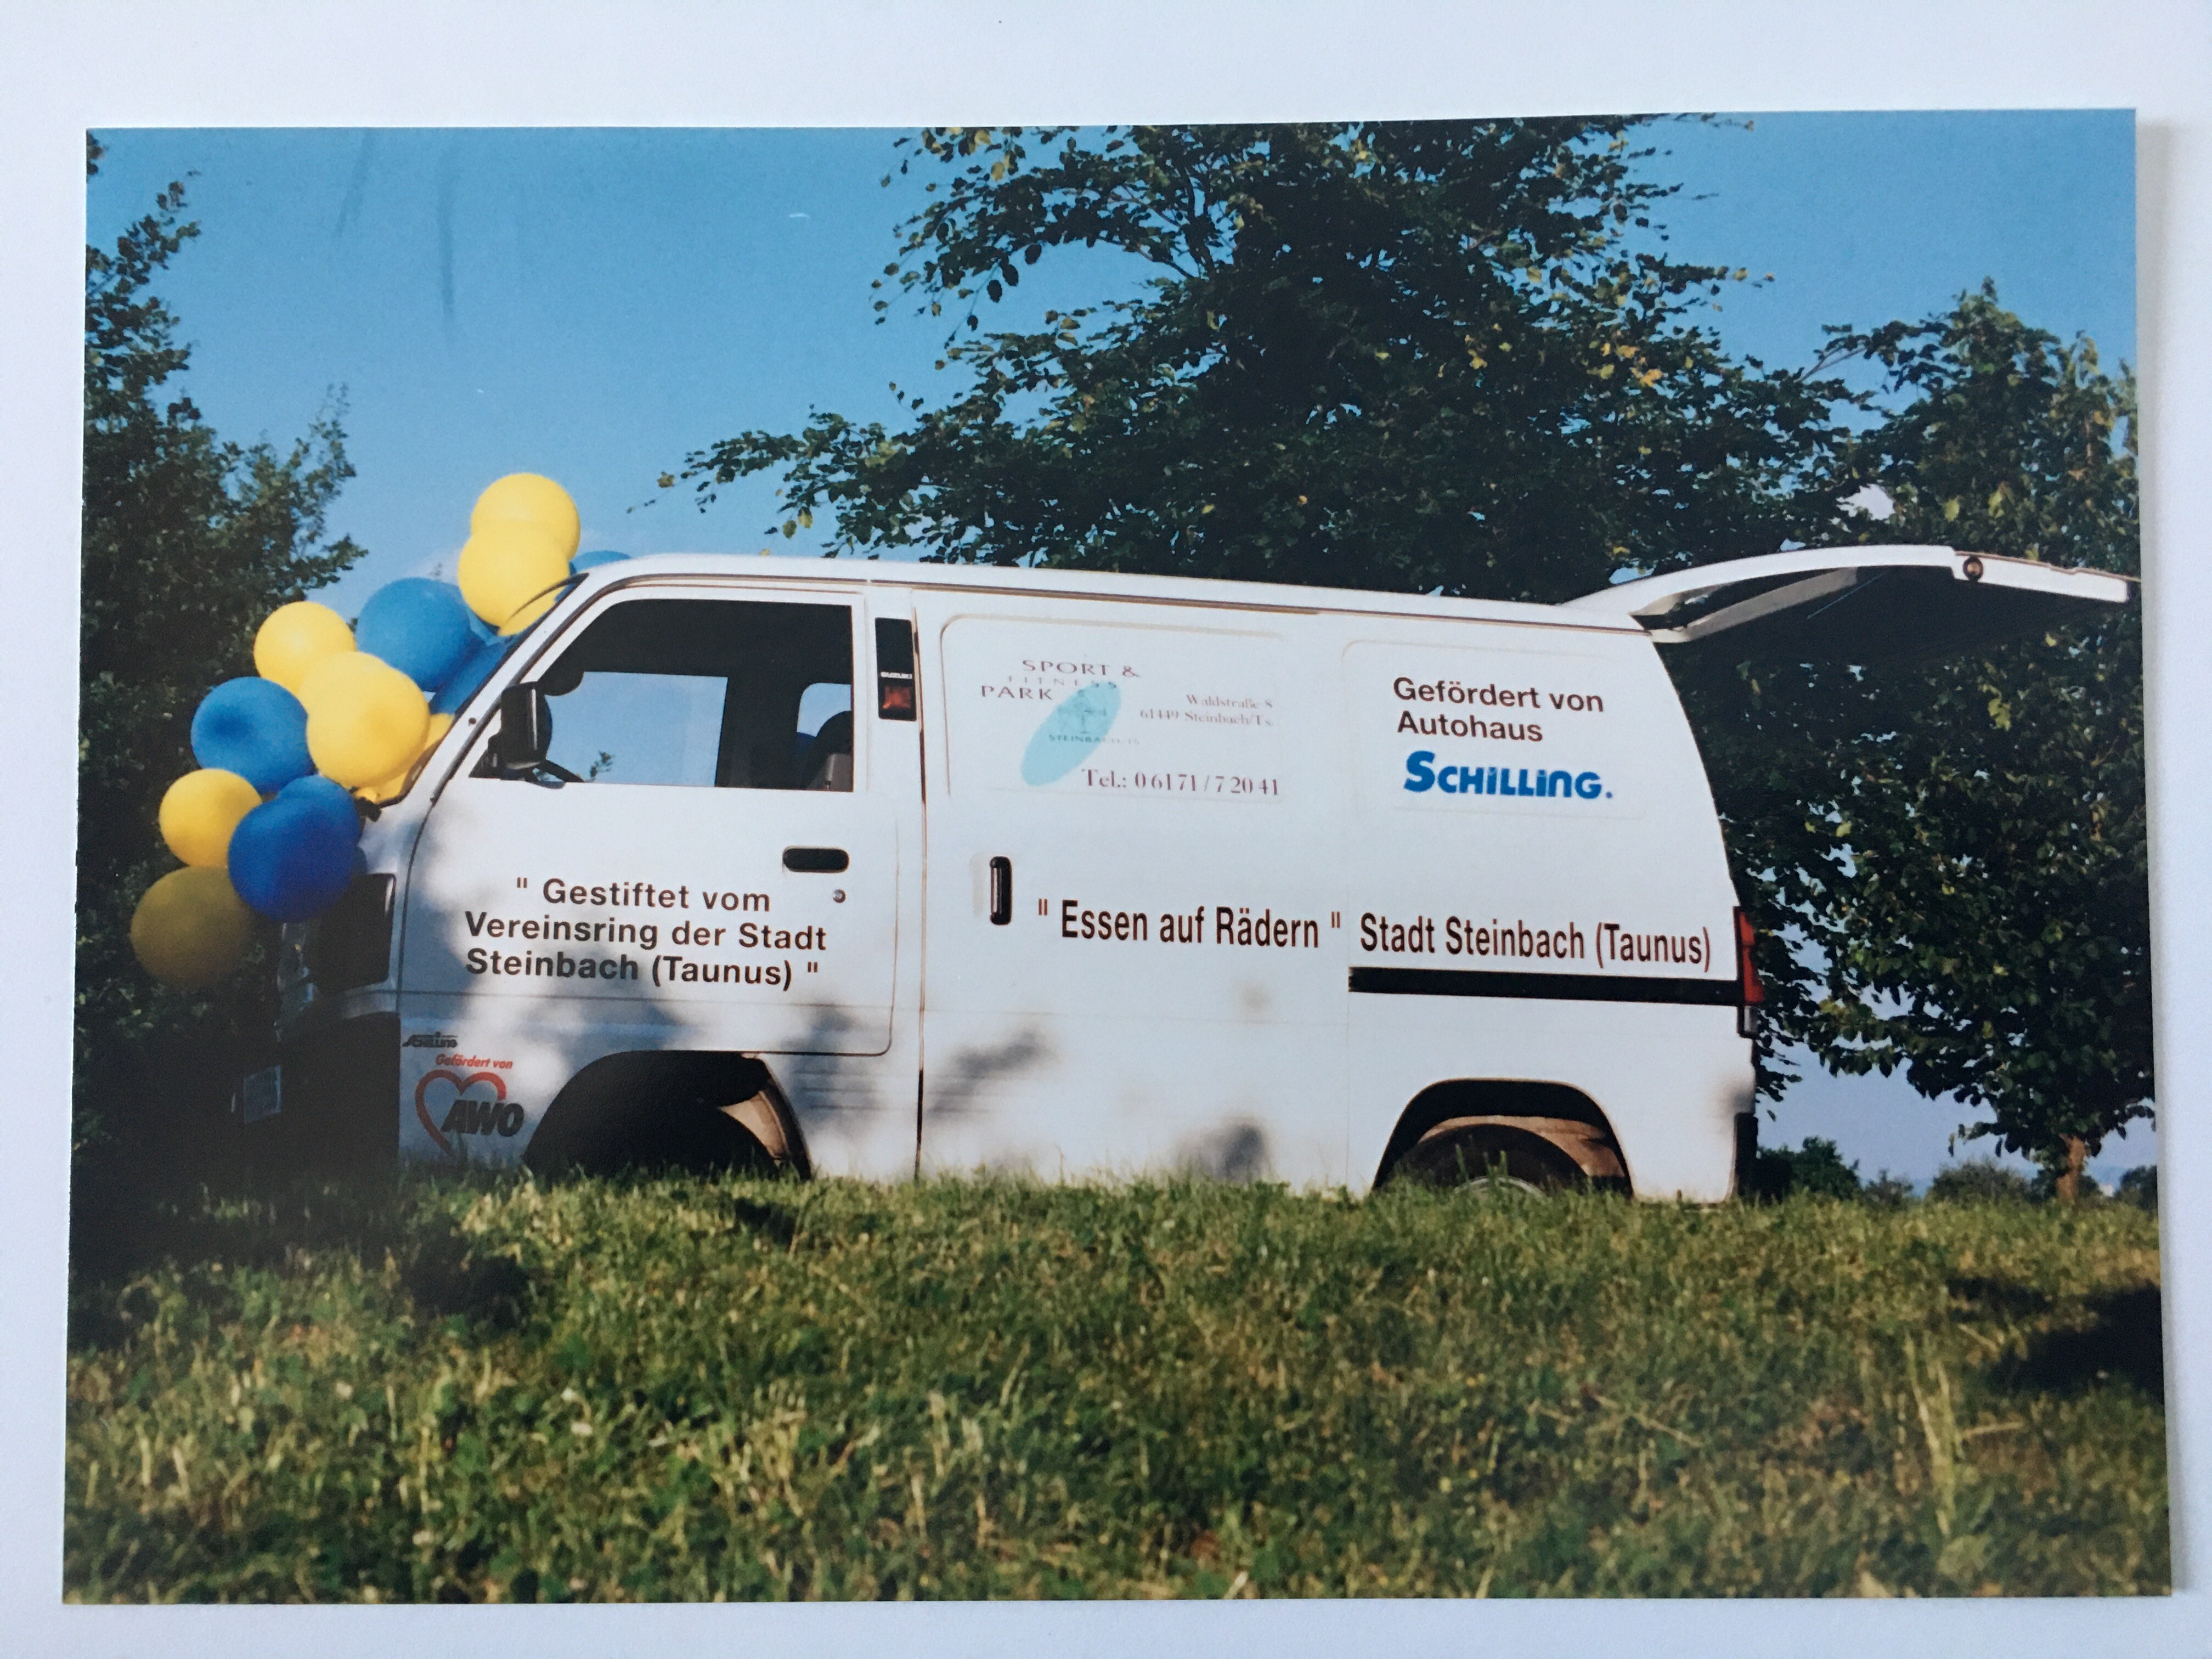 "Essen auf Rädern" Indienstellung des gespendeten Fahrzeugs Sommer 1995. (Taunus-Rhein-Main - Regionalgeschichtliche Sammlung Dr. Stefan Naas CC BY-NC-SA)